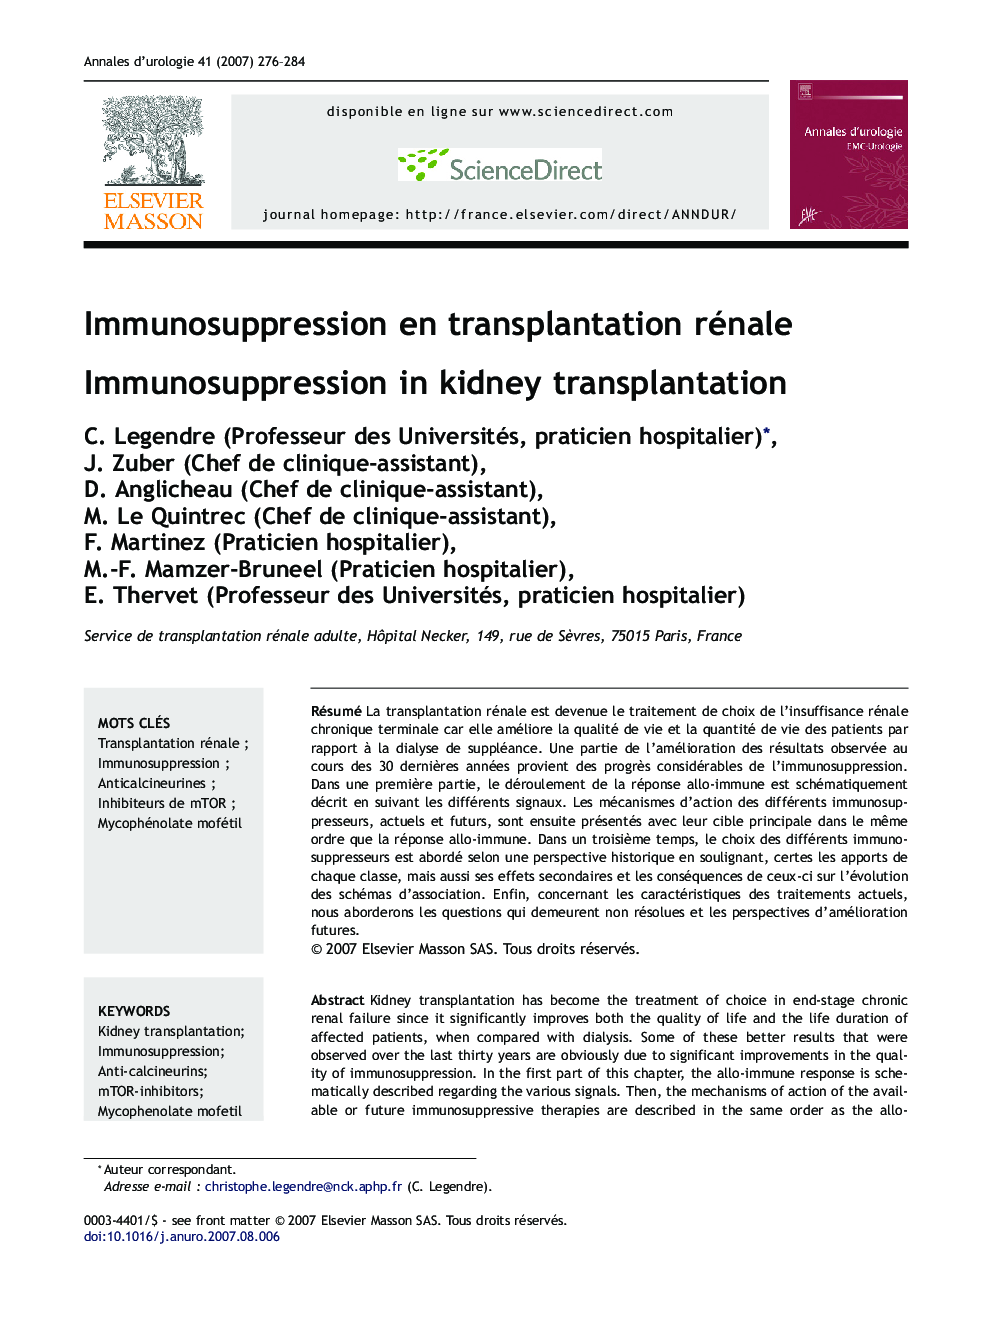 Immunosuppression en transplantation rénale